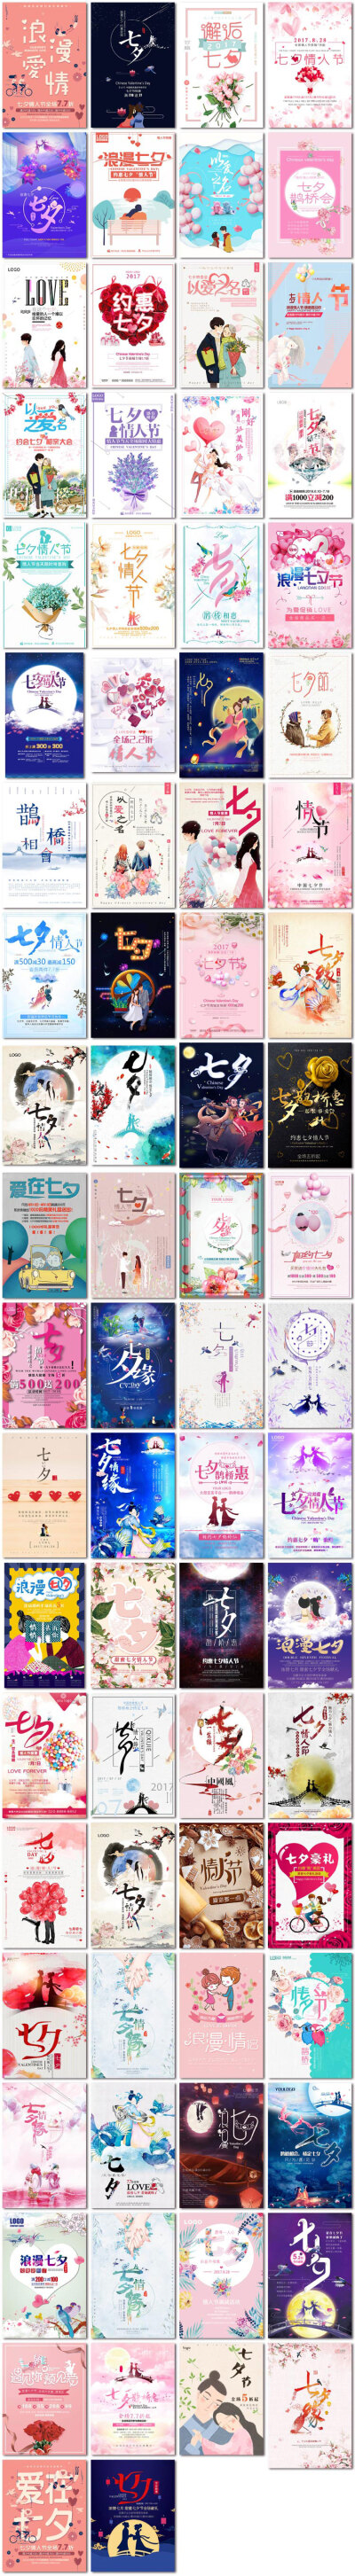 七夕情人节中国传统节日牛郎织女情侣爱情海报psd模板素材设计